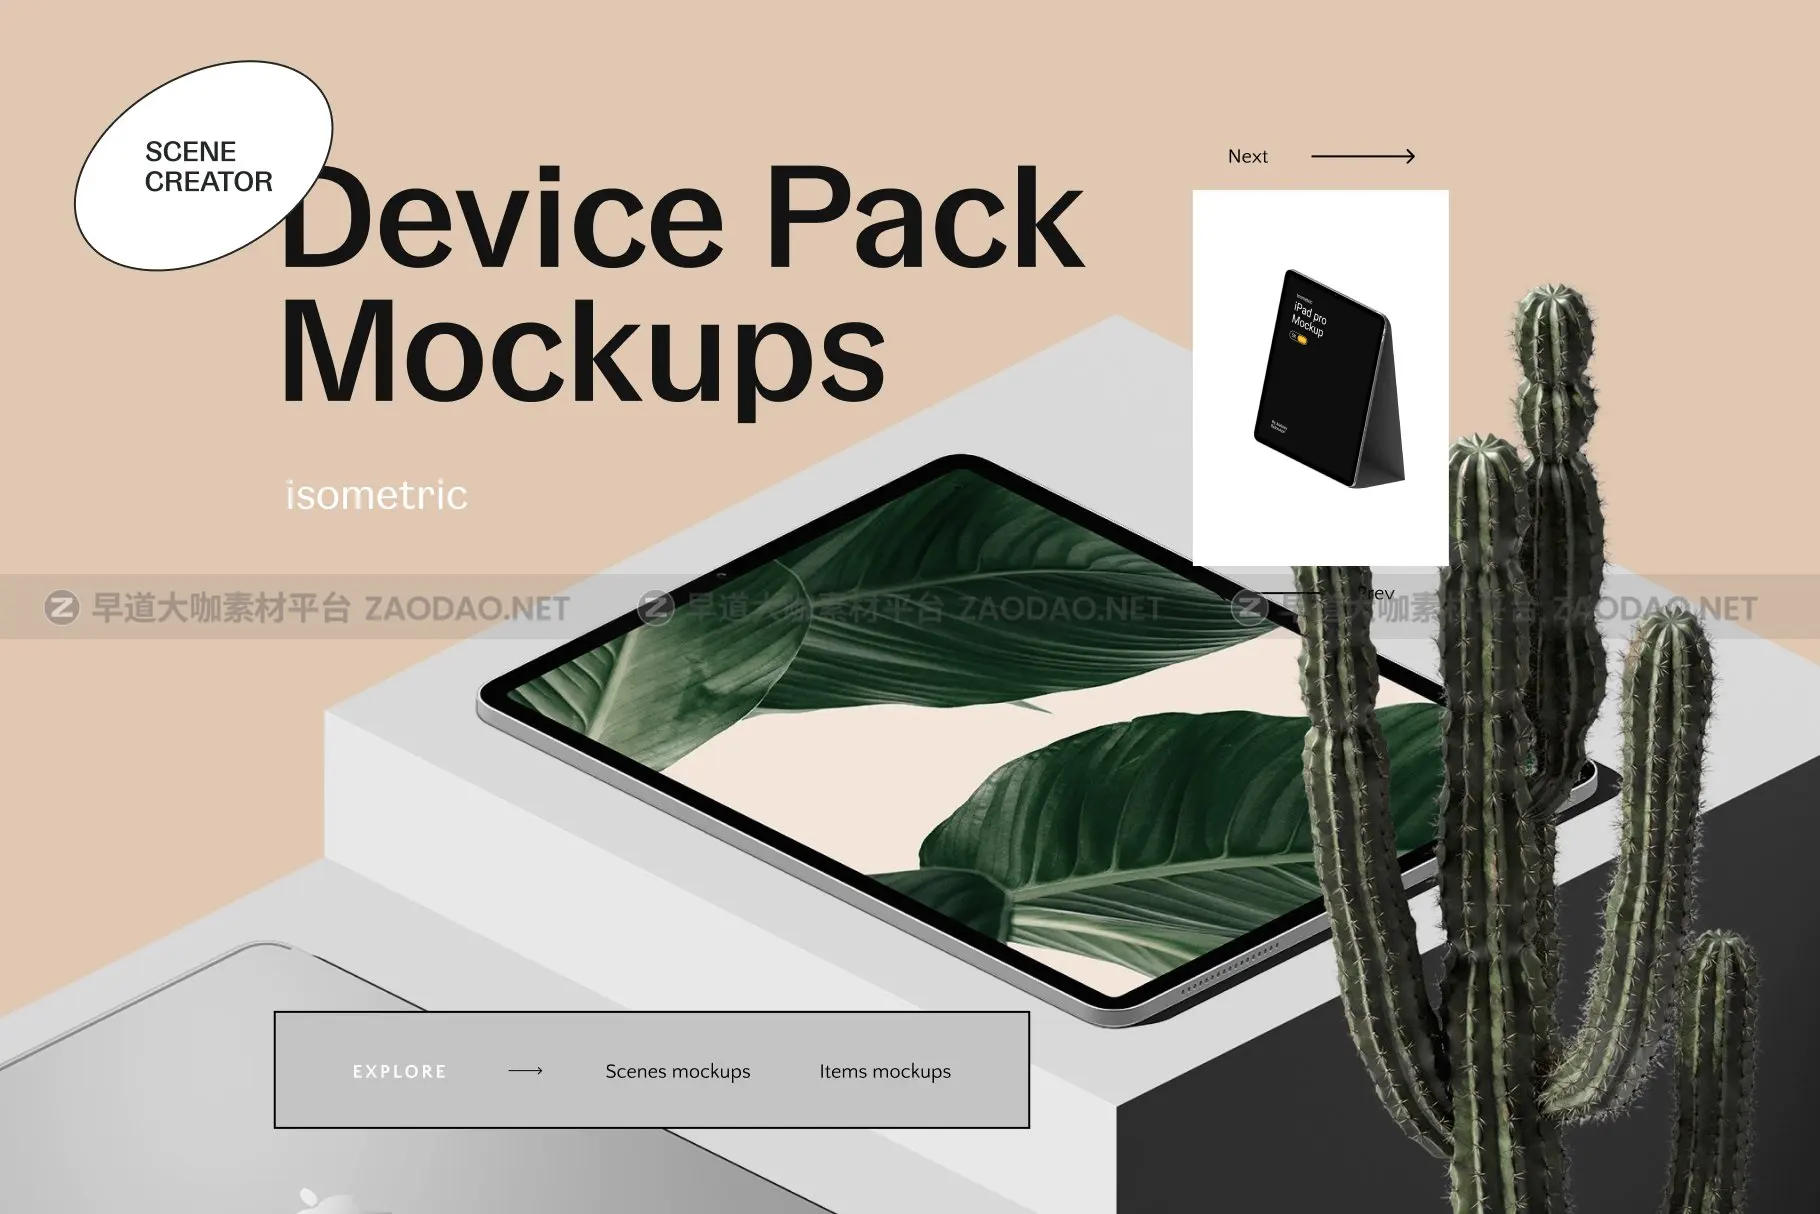 16款时尚等距APP界面设计苹果设备屏幕演示场景样机模板套装 Device Pack Mockups – Isometric插图